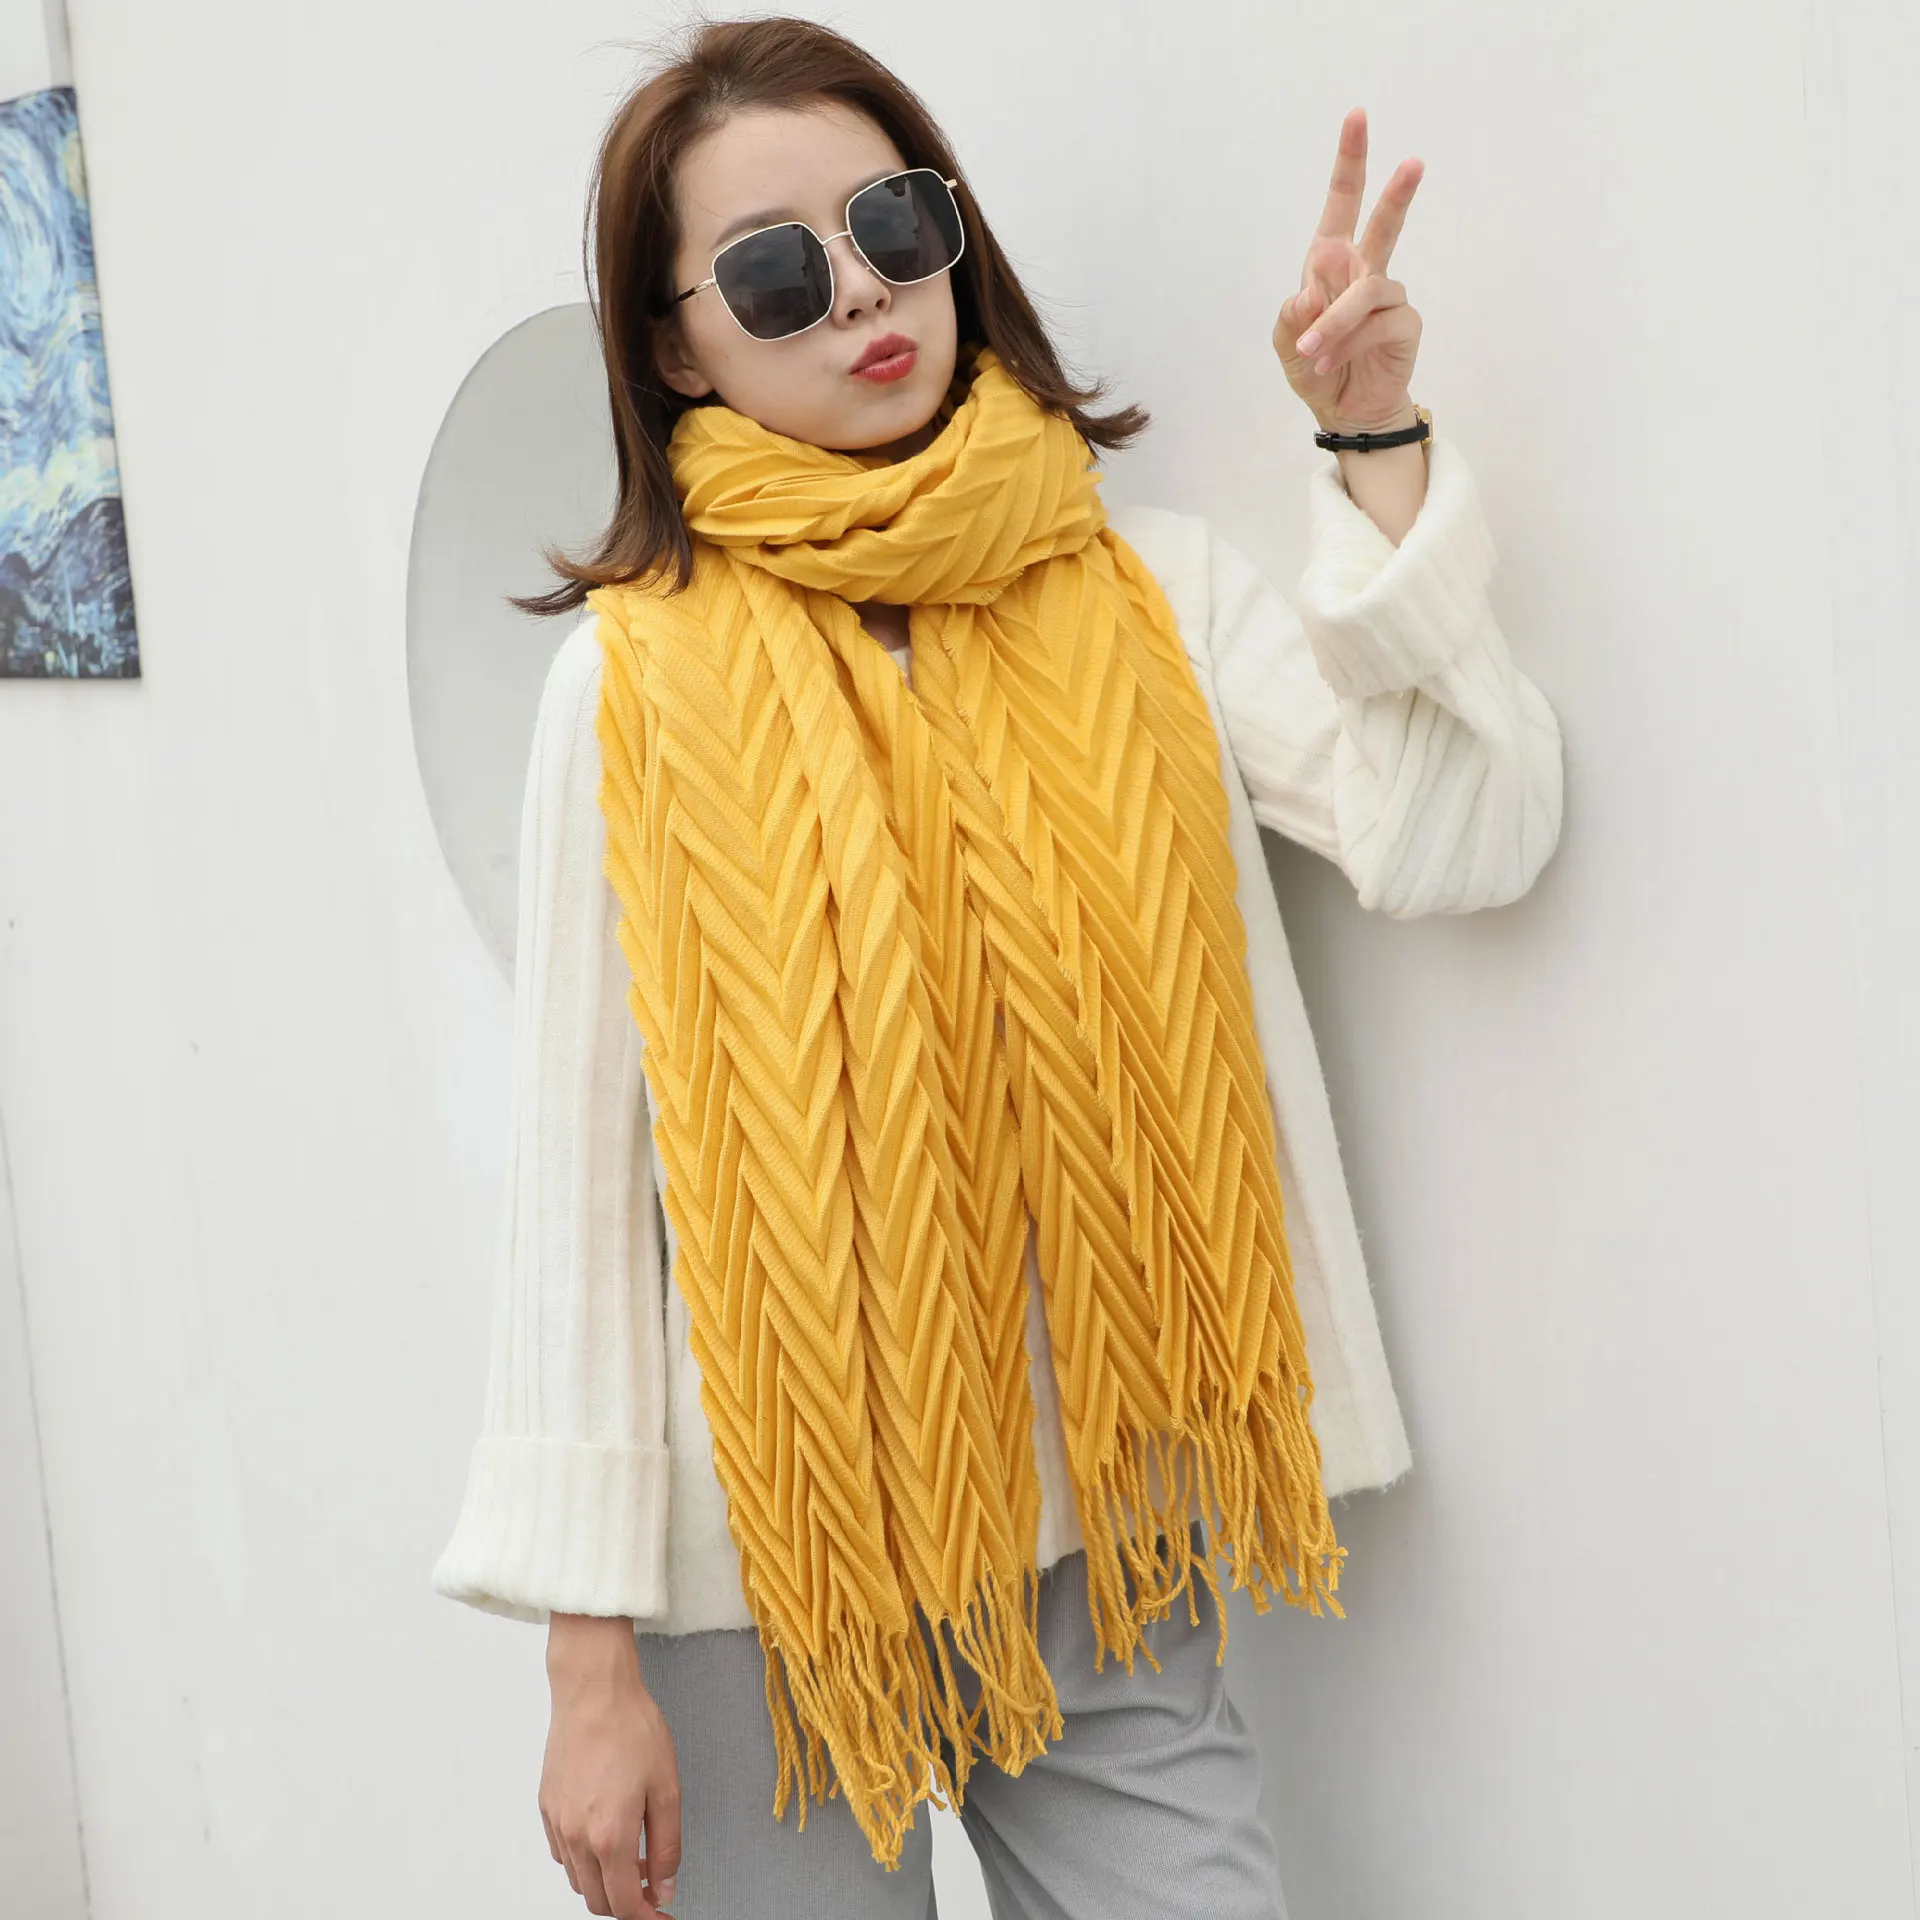 Прямая от производителя, 19 новых стильных импортных товаров, корейский стиль, акриловый шарф из искусственного кашемира с волнистыми складками на осень и зиму